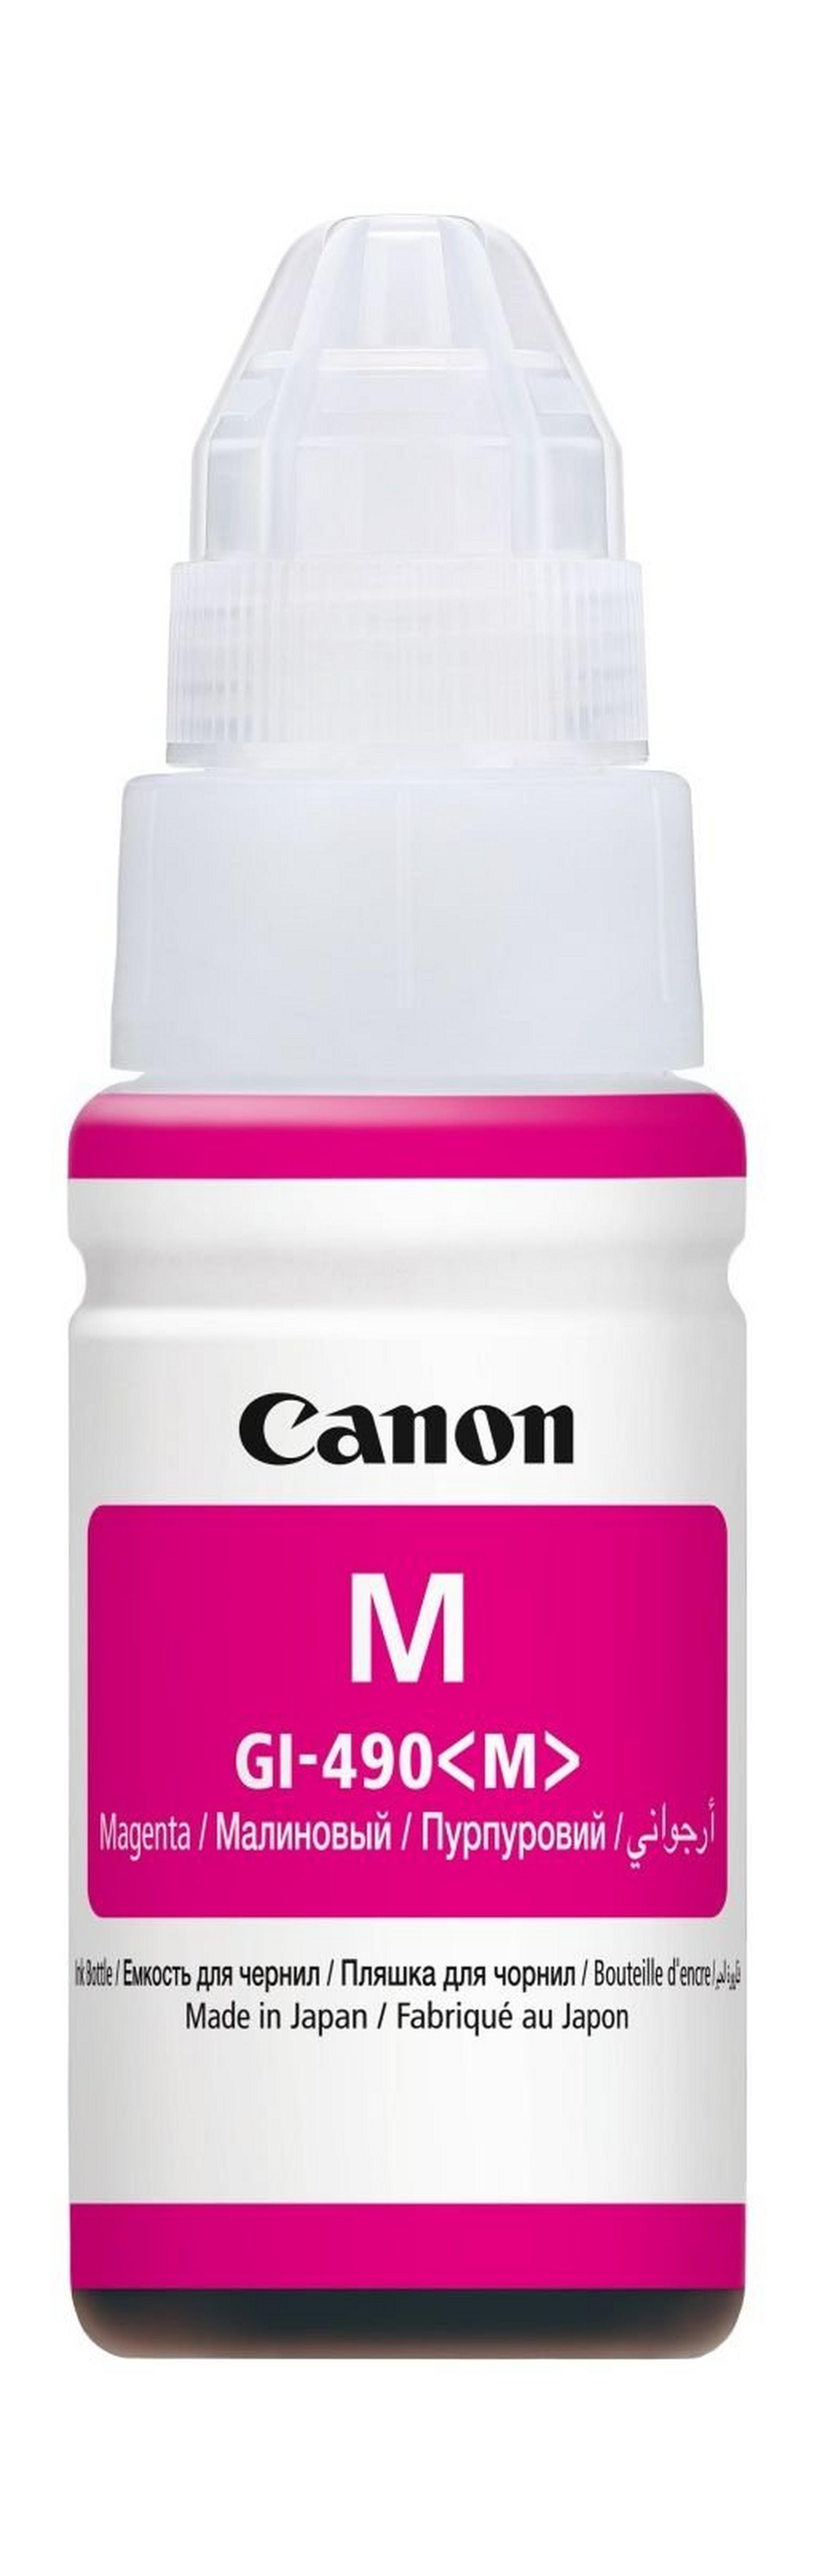 Canon GI-490 70ml Ink Bottle For Inkjet Printing (0665C001AA)- Magenta